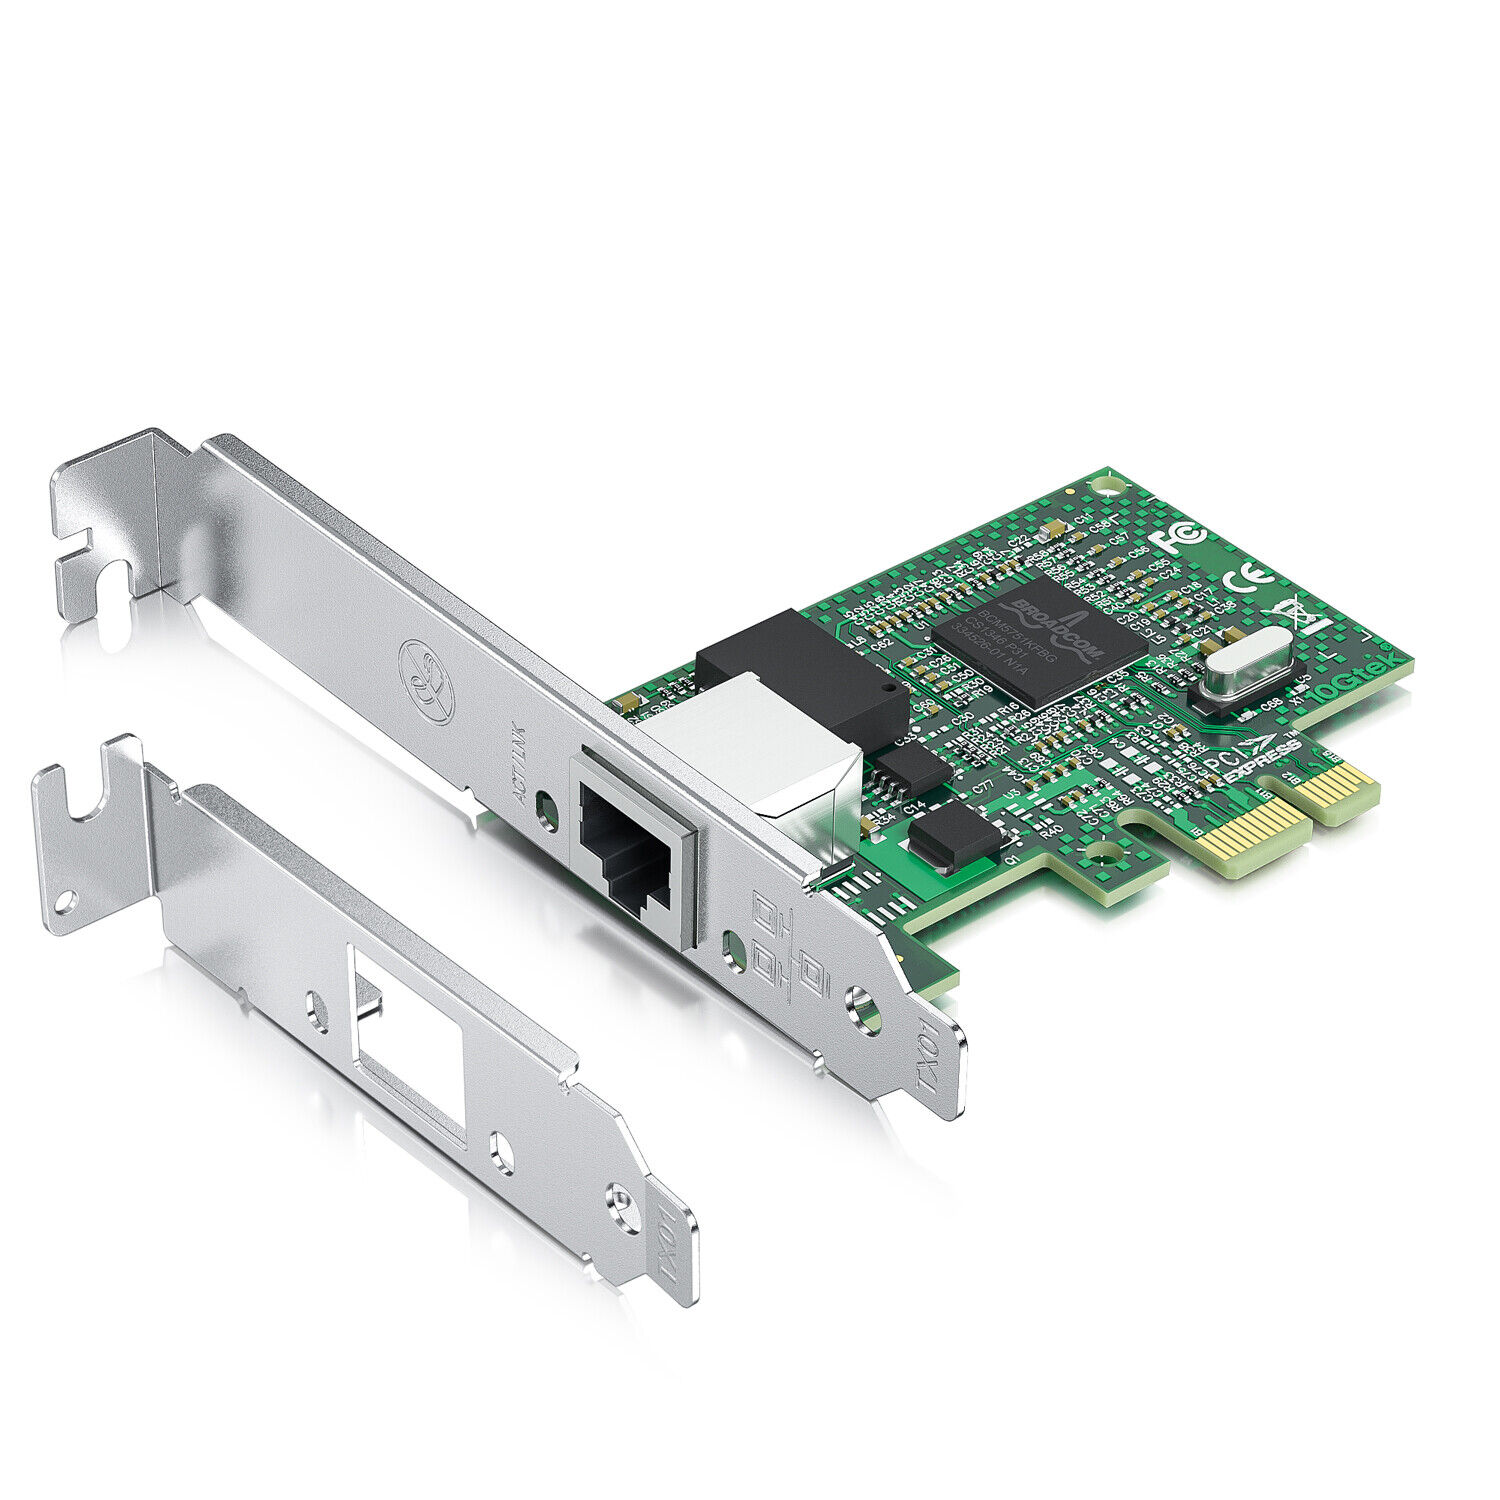 For Broadcom BCM5751 PCI-E 1.25G Gigabit Ethernet Network Adapter Single RJ45